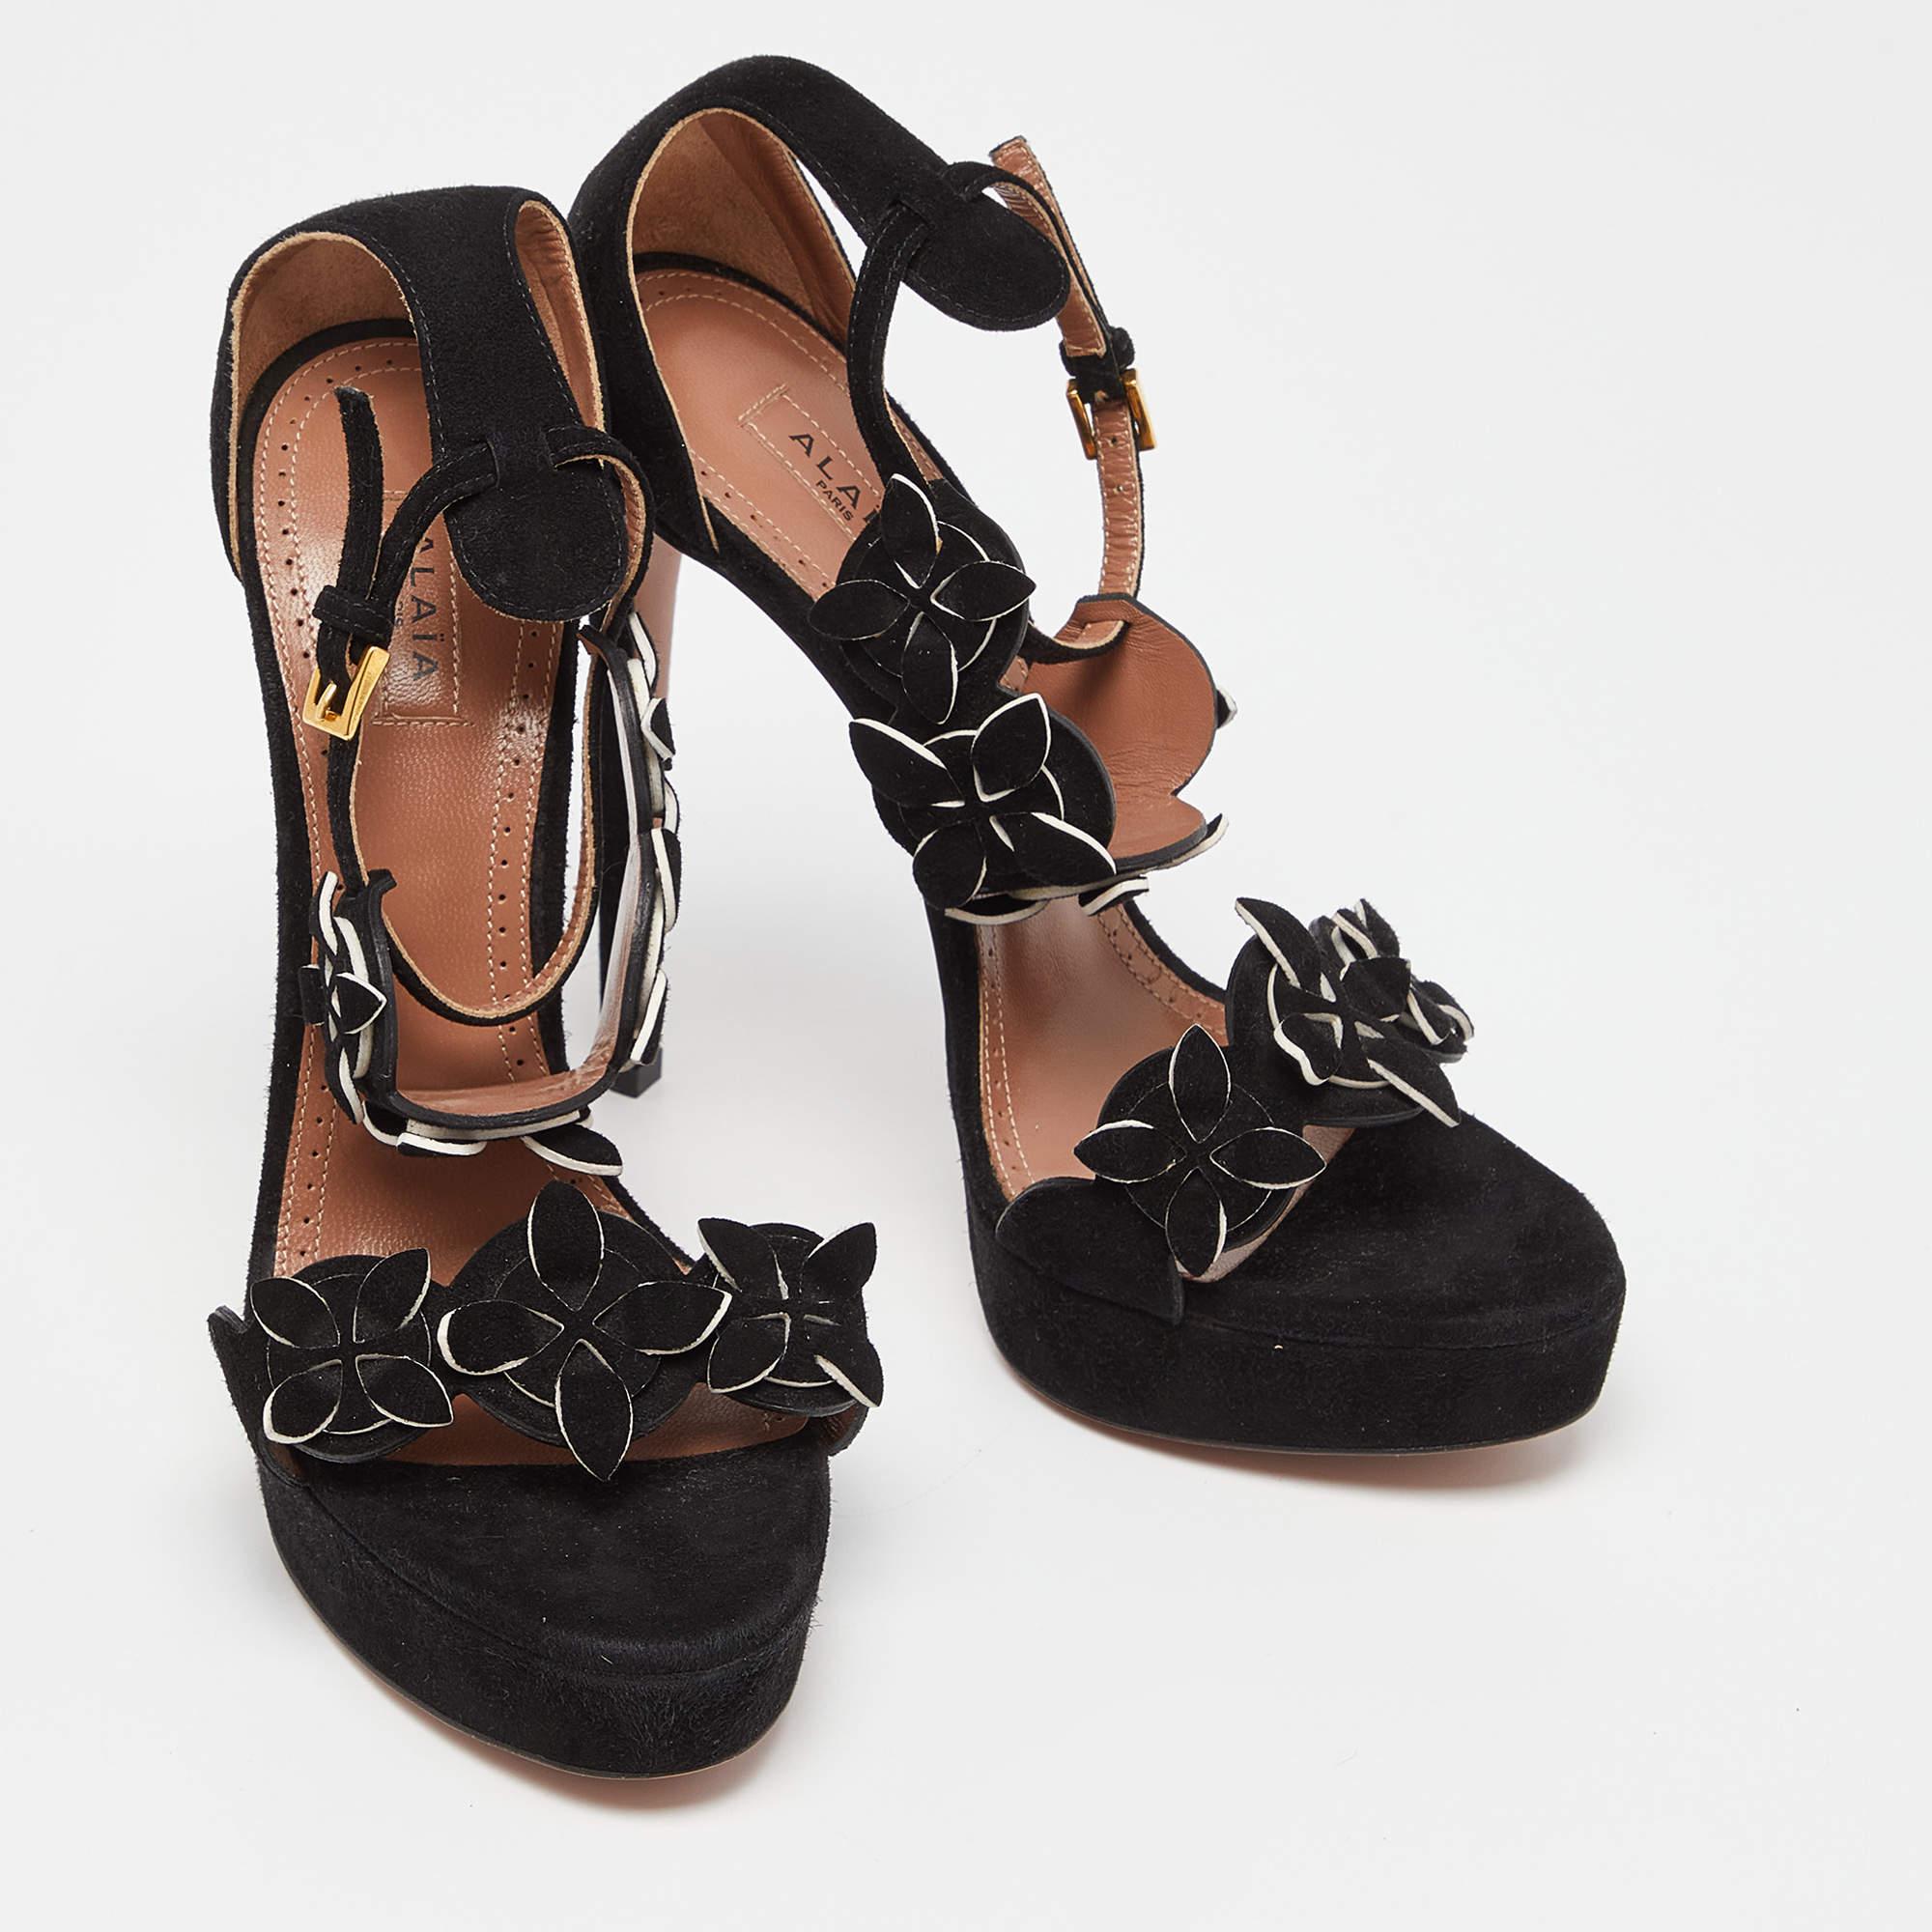 Alaia Black Suede Platform Ankle Strap Sandals Size 38 In Excellent Condition For Sale In Dubai, Al Qouz 2